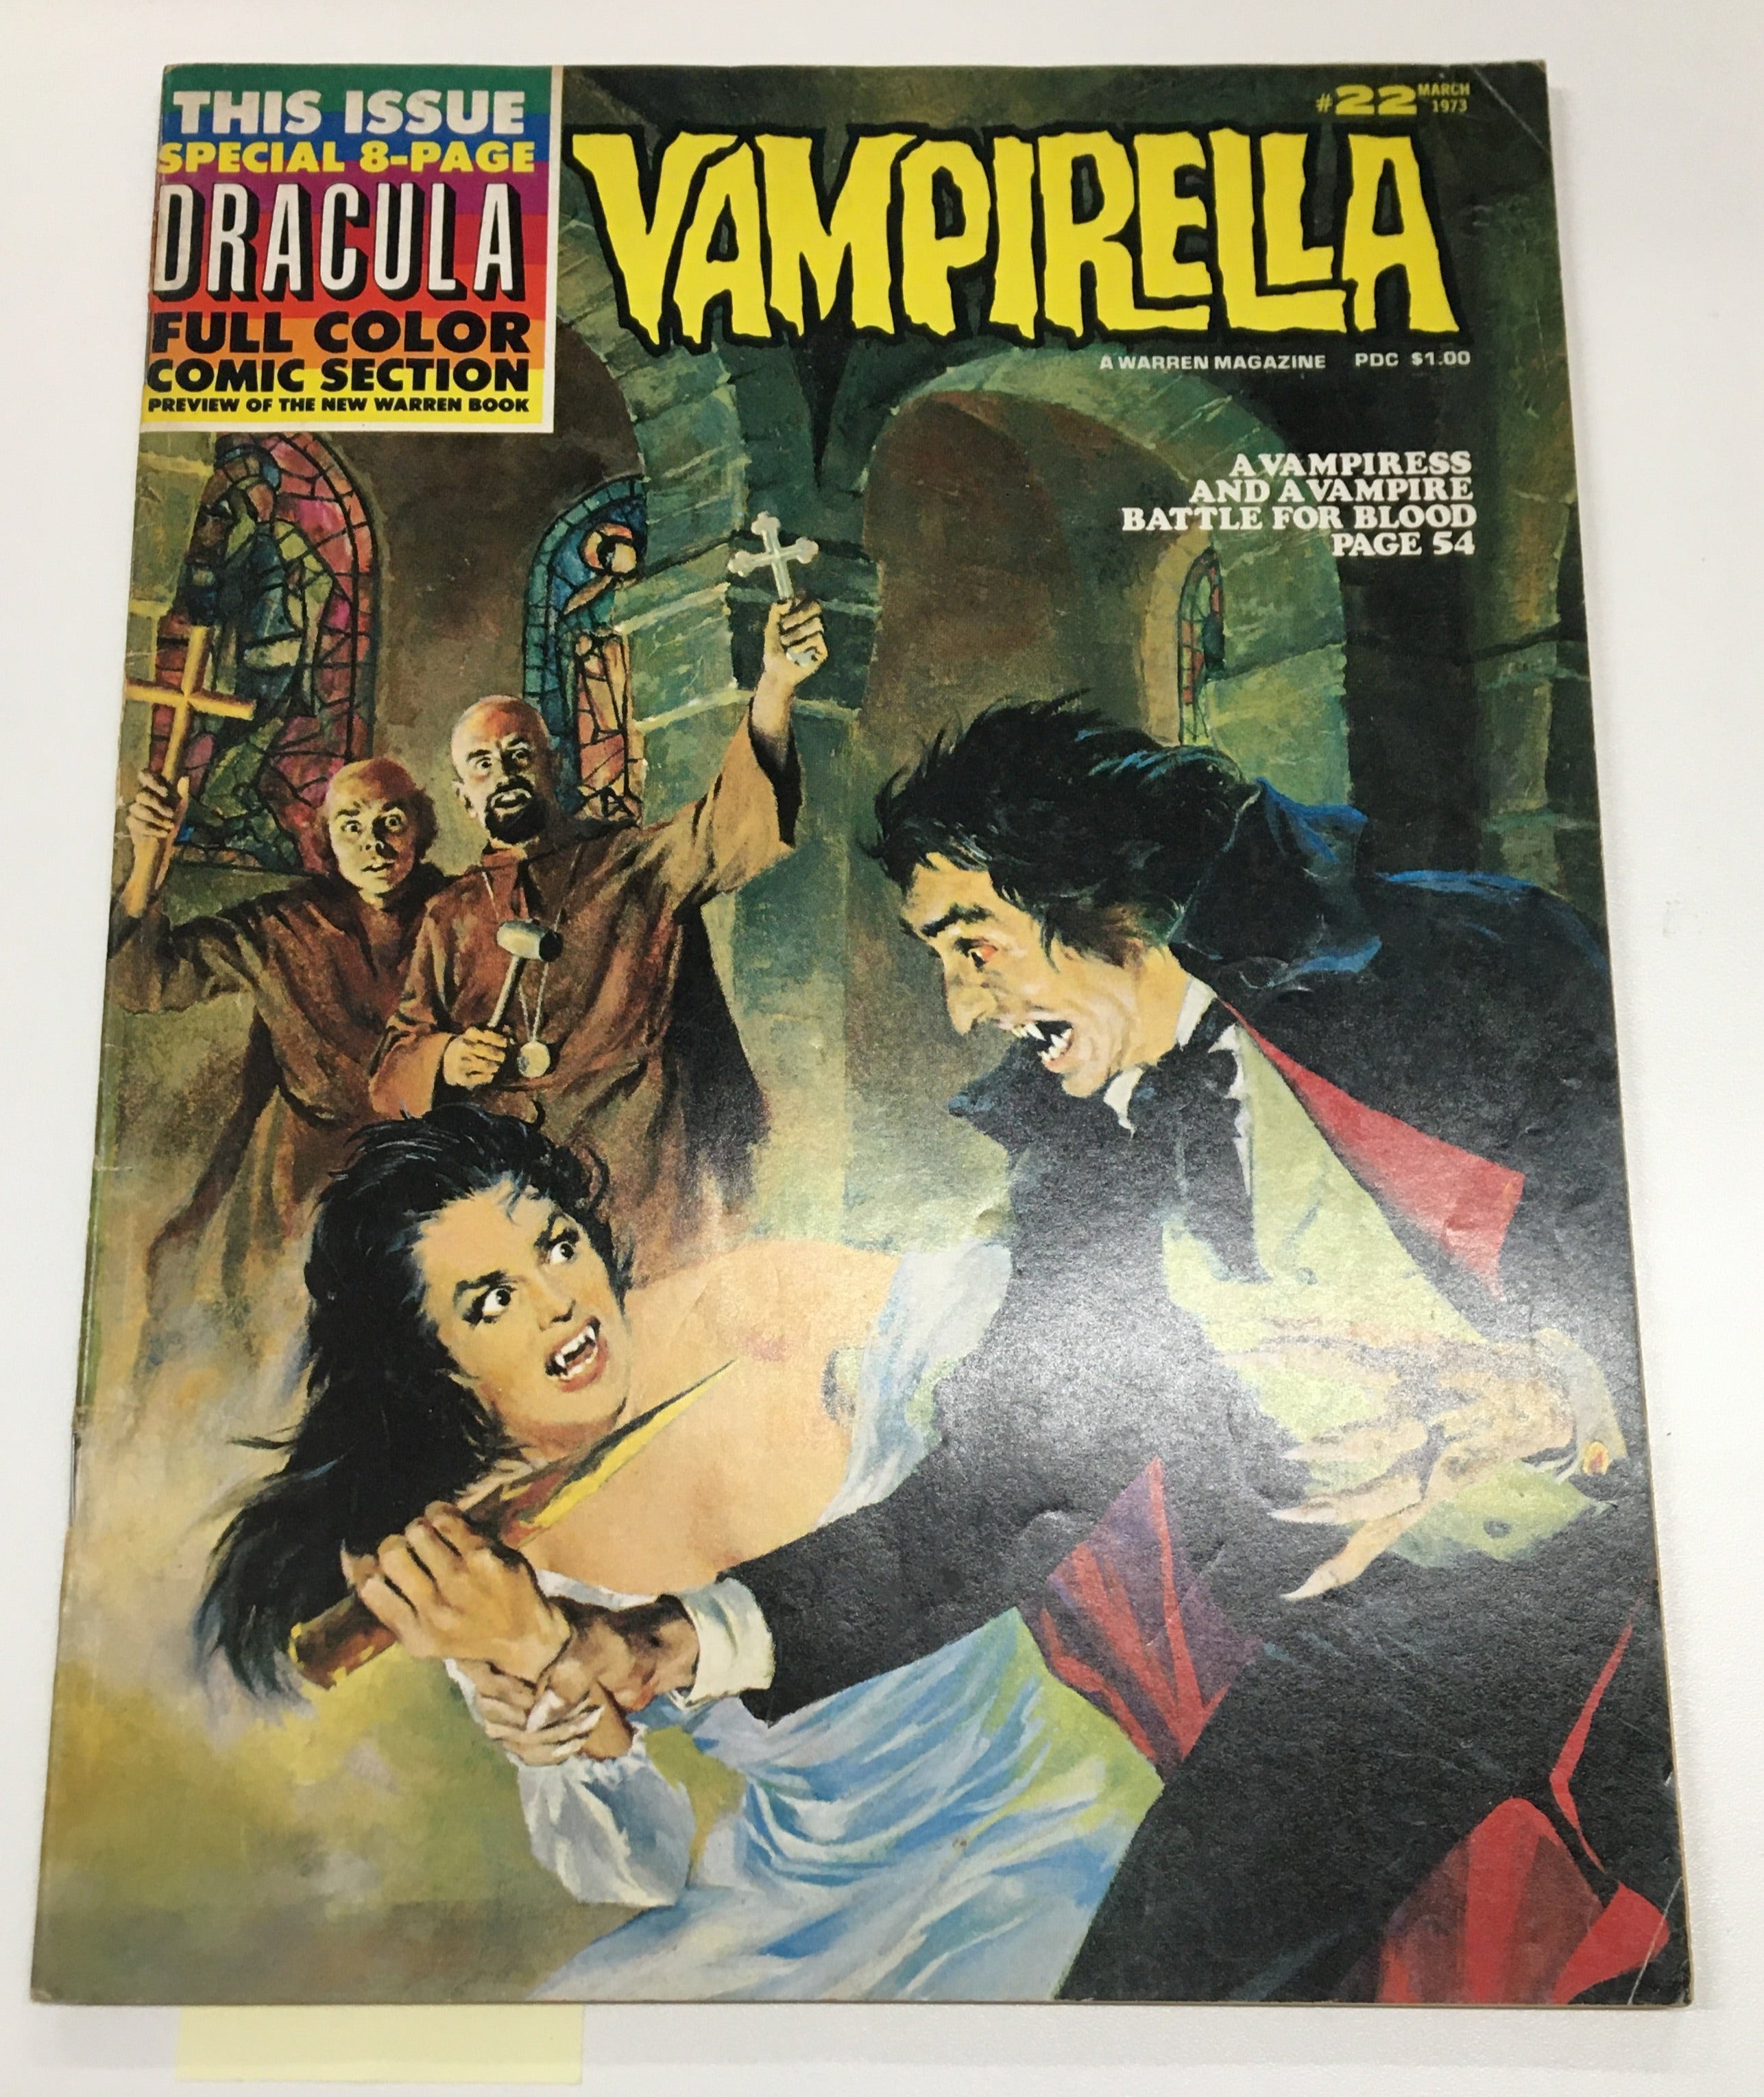 Vampirella Magazine #22 | L.A. Mood Comics and Games